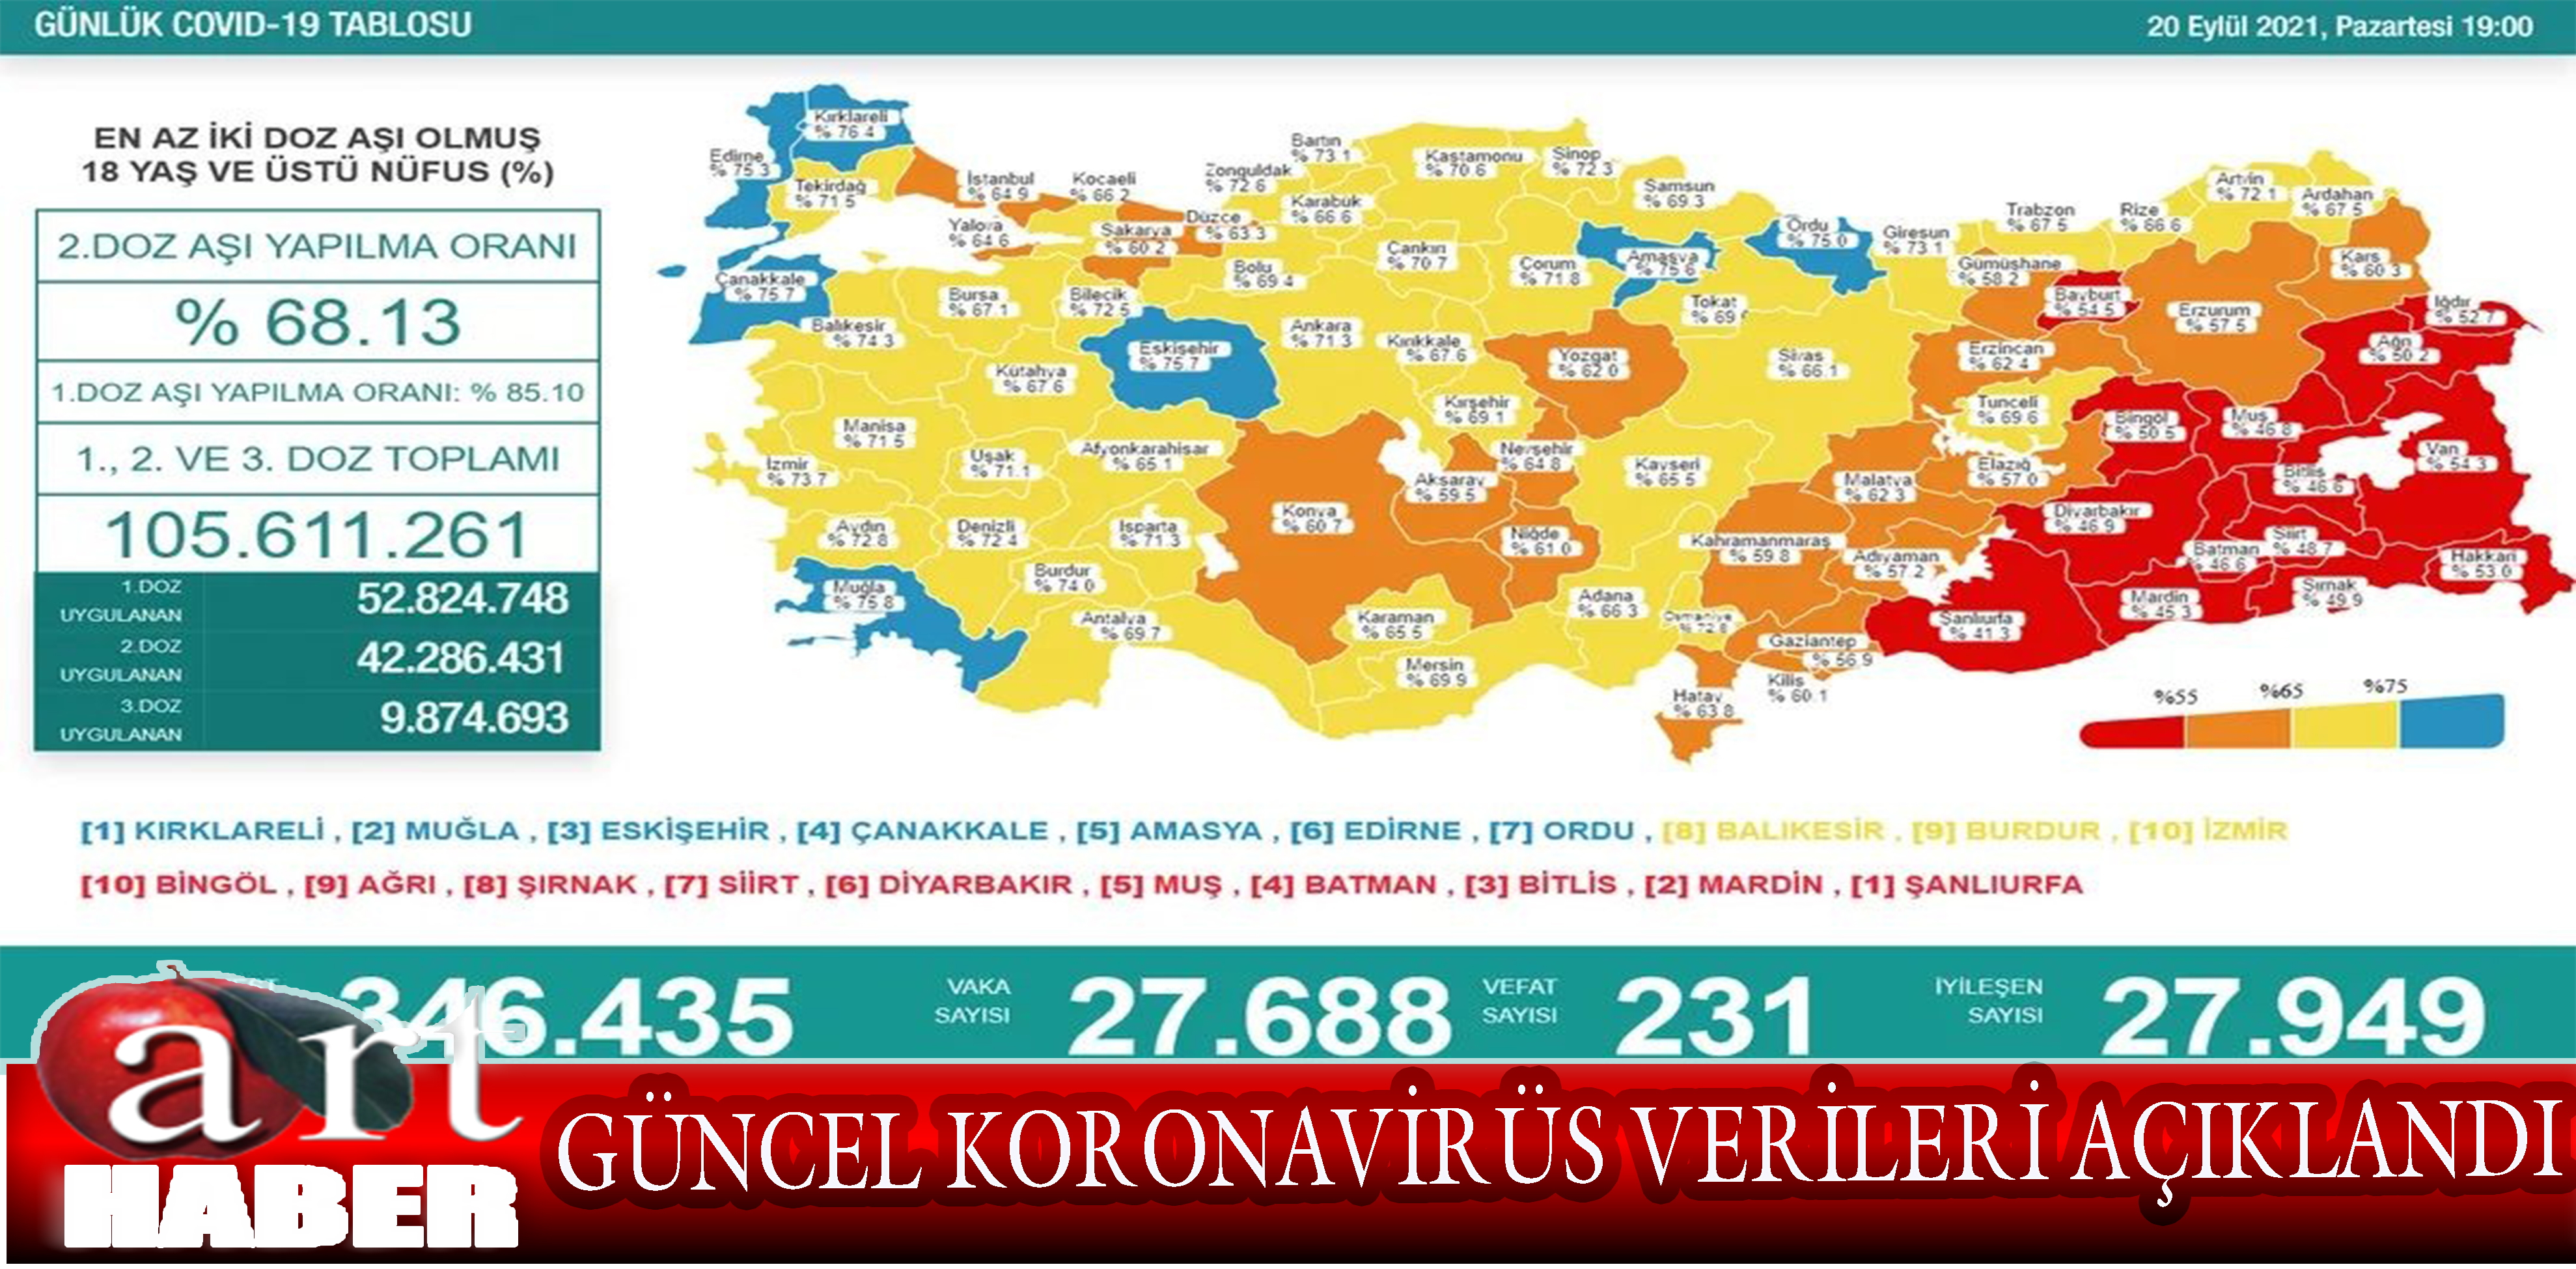 20 Eylül Türkiye’nin güncel koronavirüs verileri açıklandı. İşte son durum